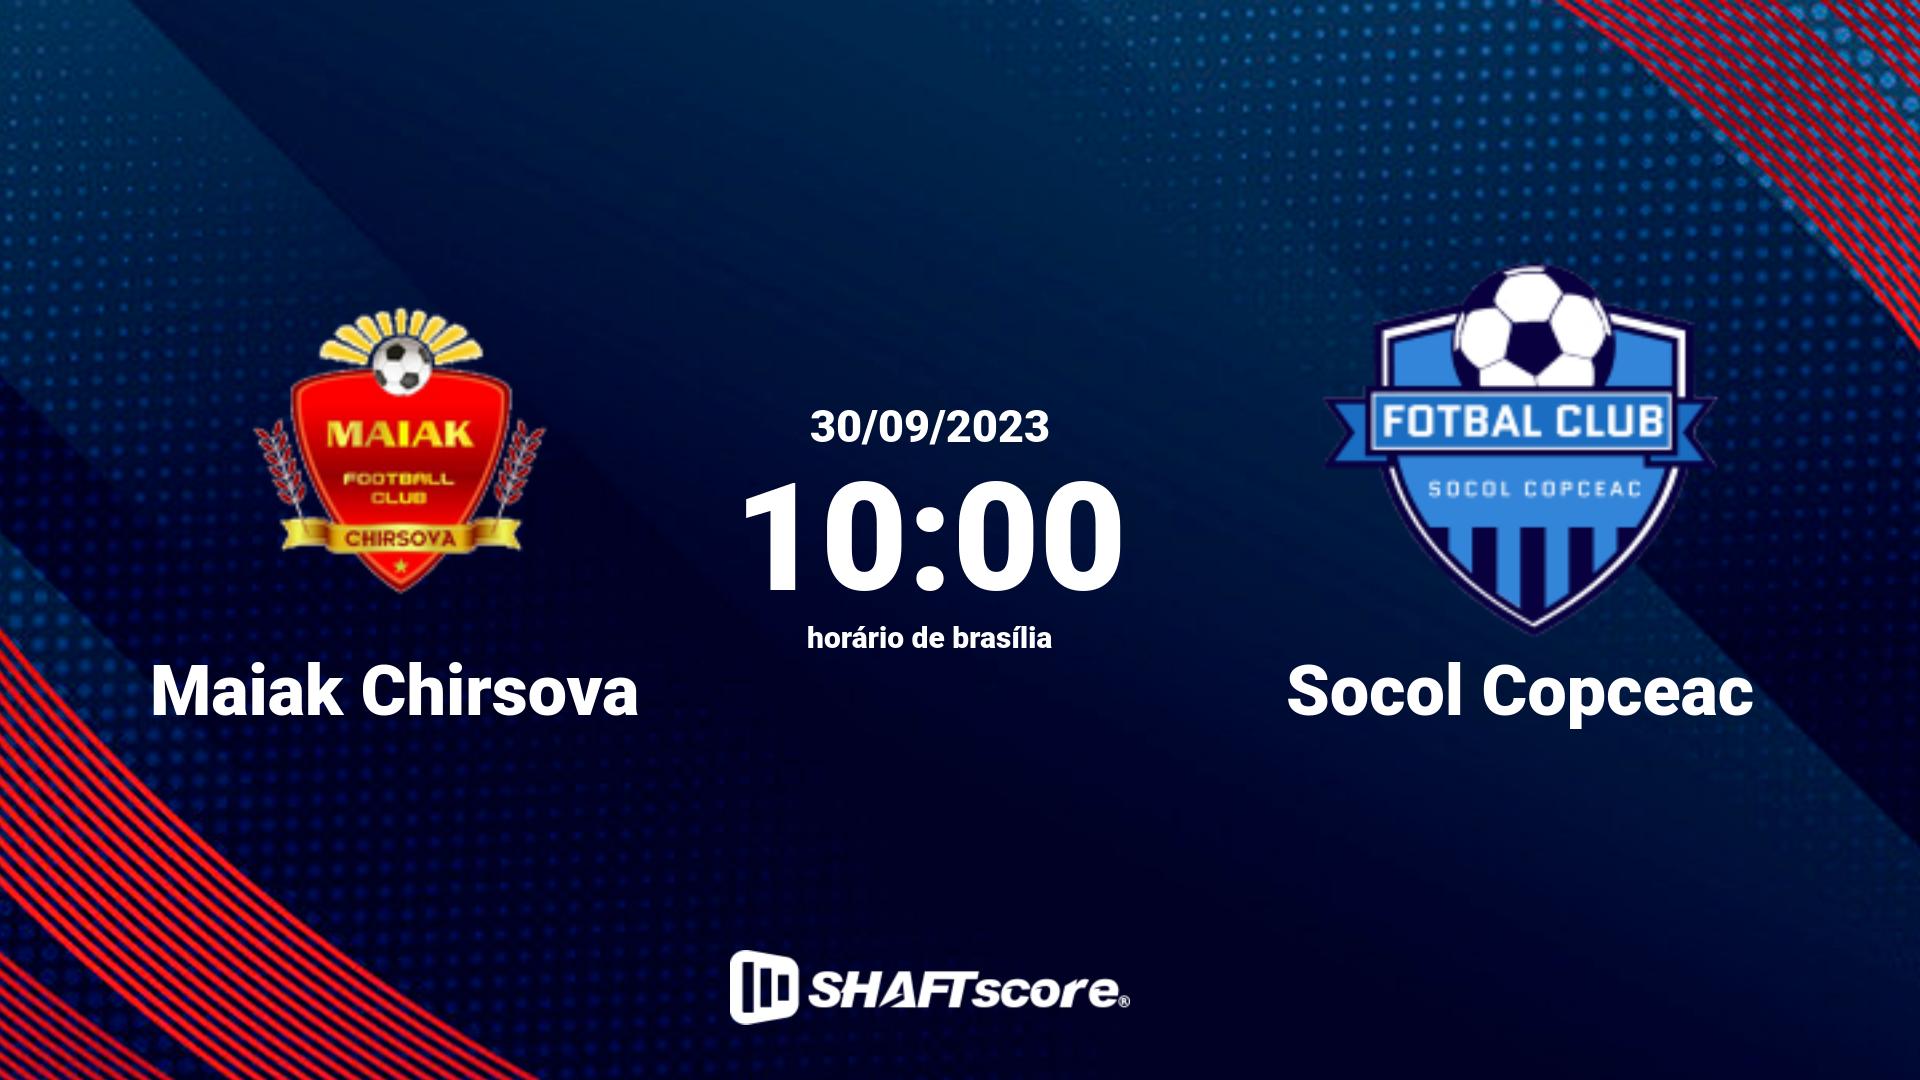 Estatísticas do jogo Maiak Chirsova vs Socol Copceac 30.09 10:00